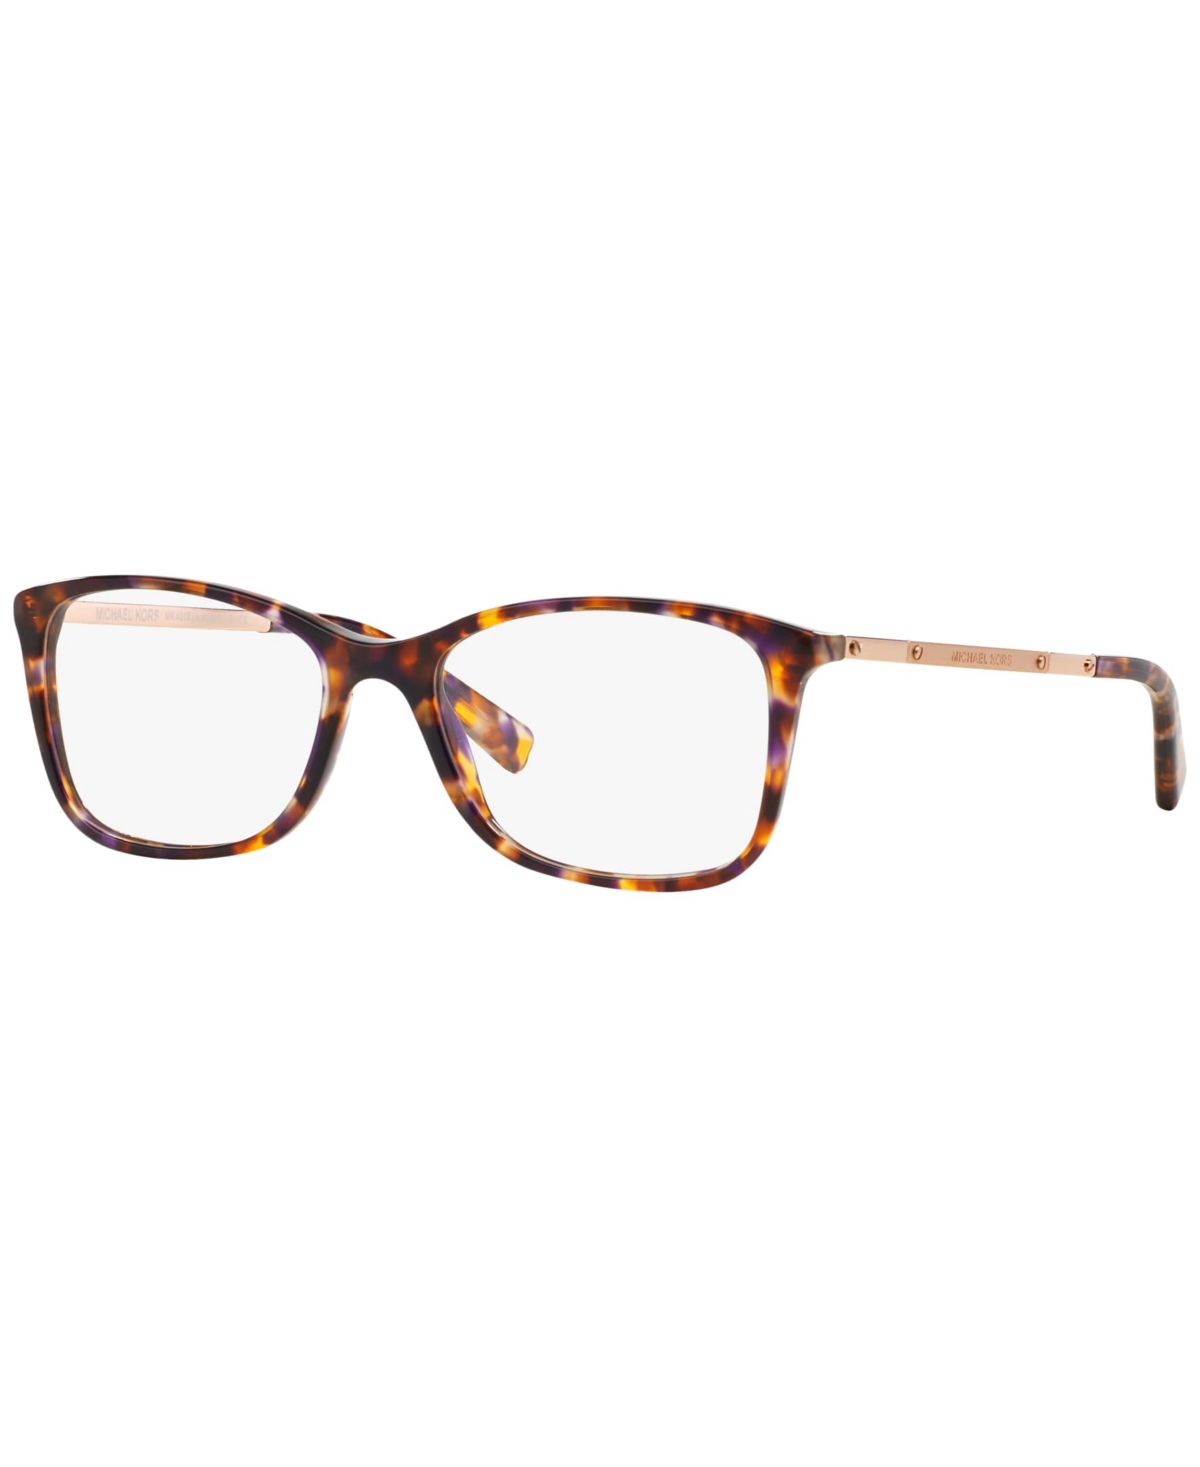 Women's Antibes Eyeglasses, MK4016 - Sunset Confetti Tortoise